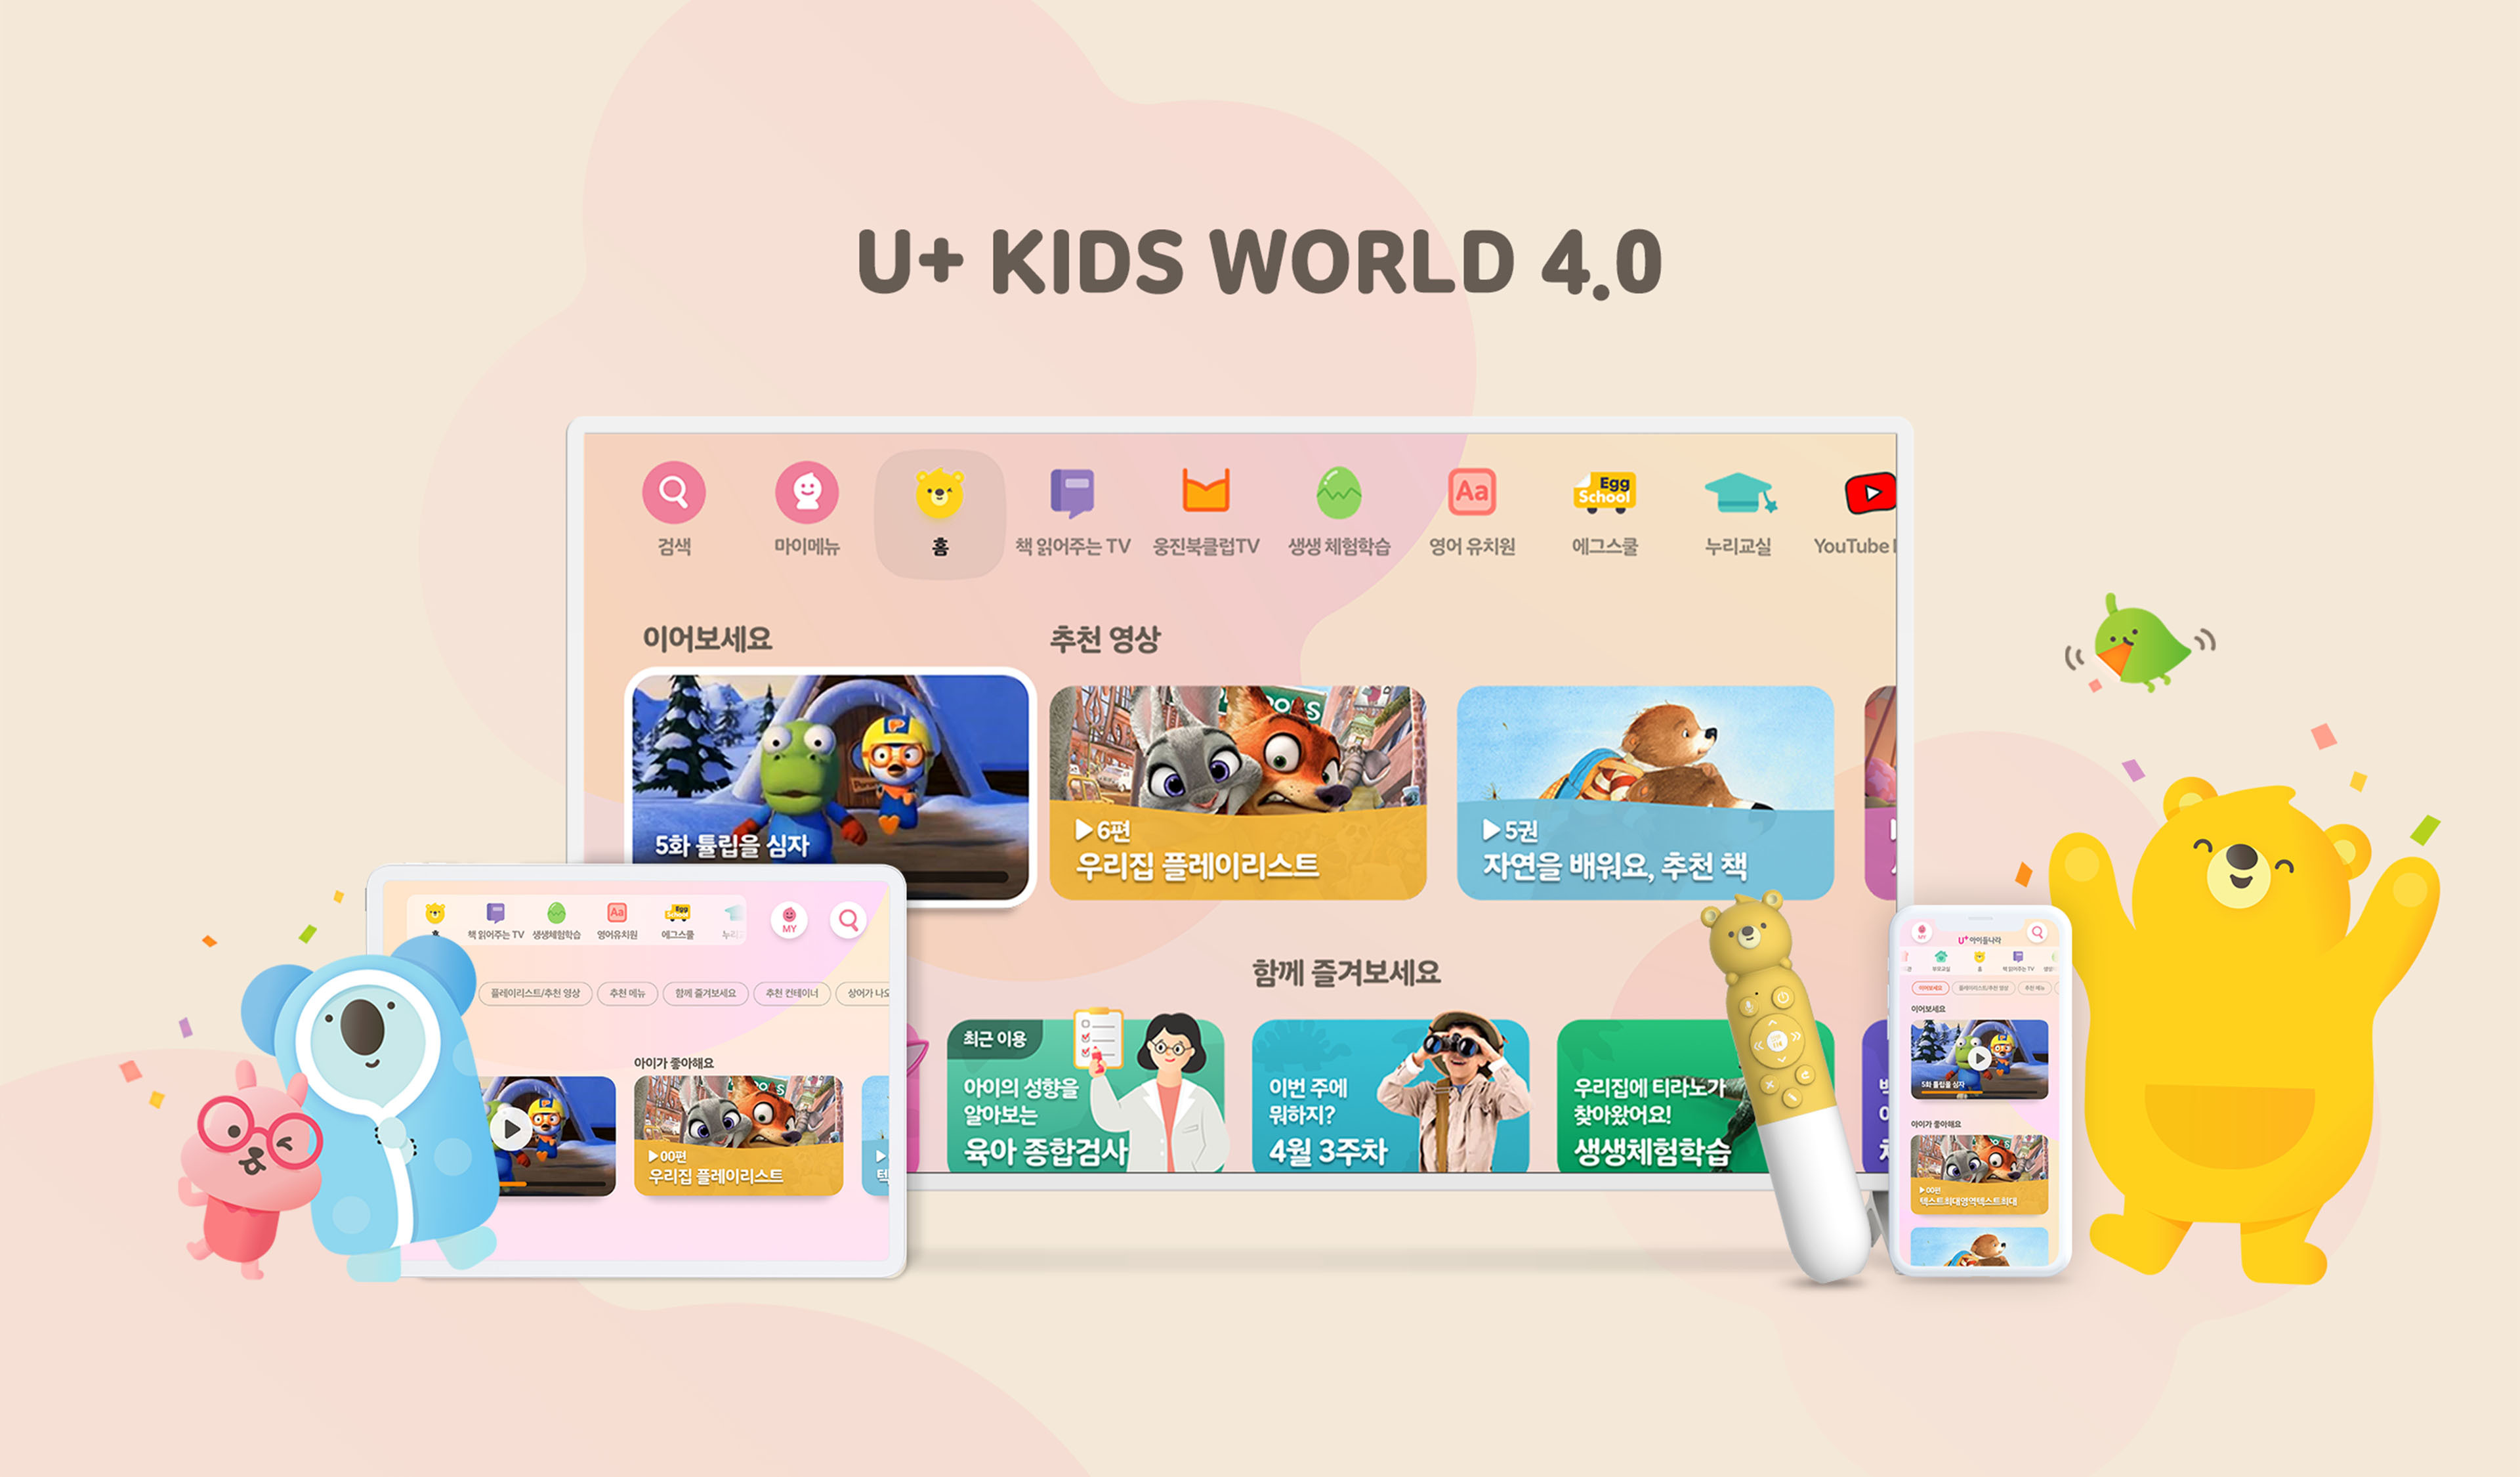 U+ Kids World 4.0